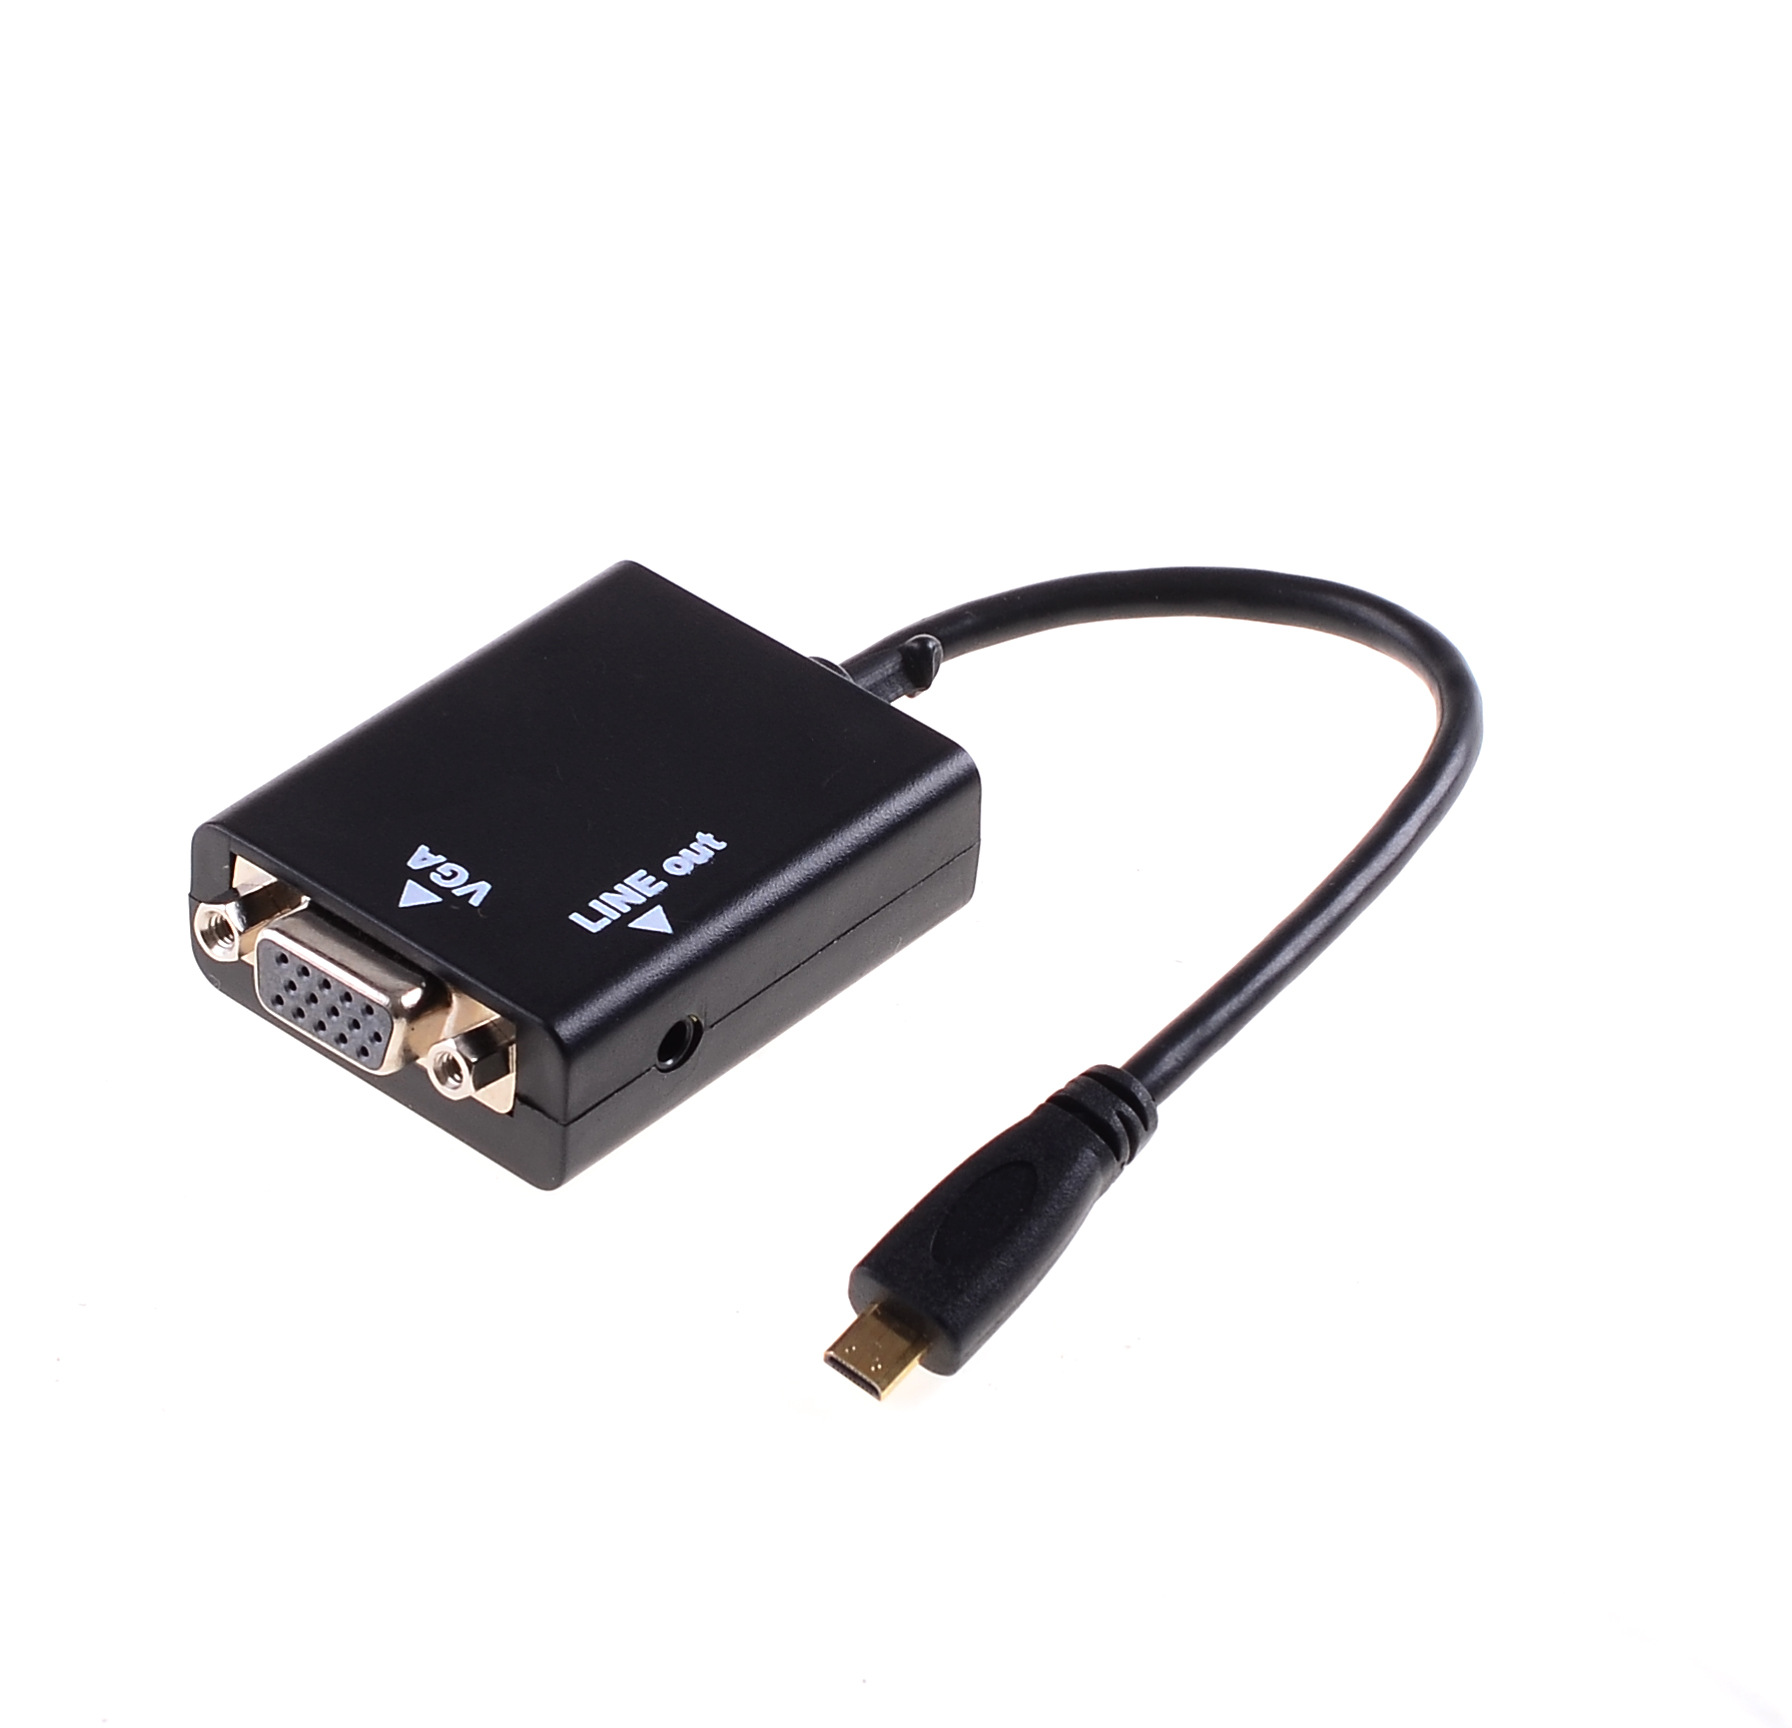 厂家直供 质量保证 micro hdmi转vga转接线 带音频连接线xpb1077